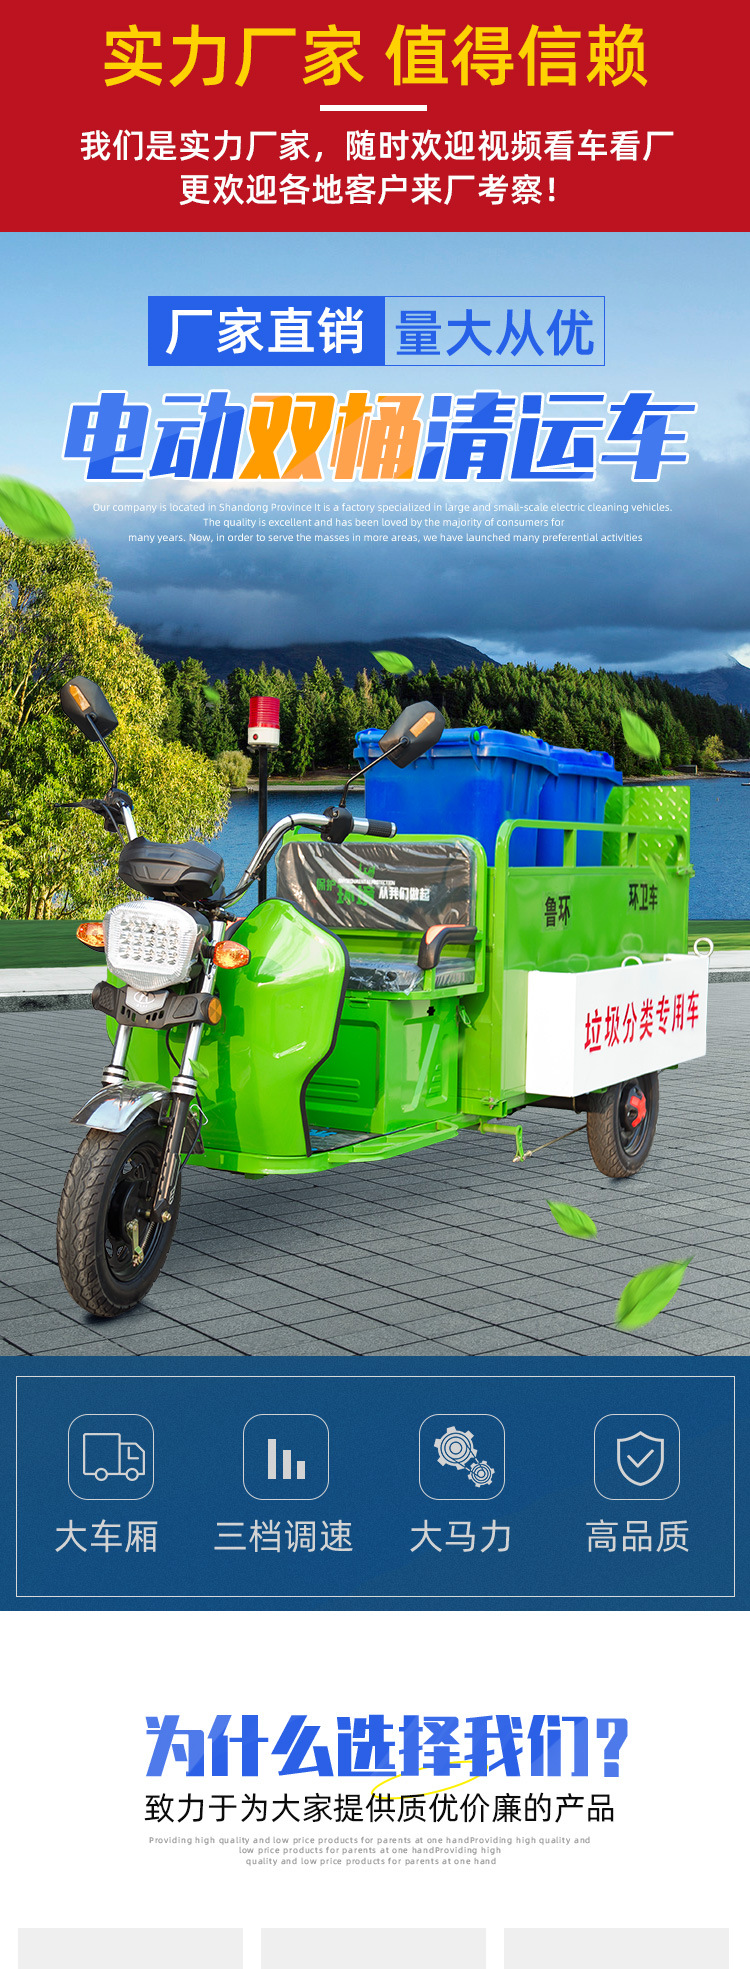 Електричний трицикл з подвійним смітником для сміття_01